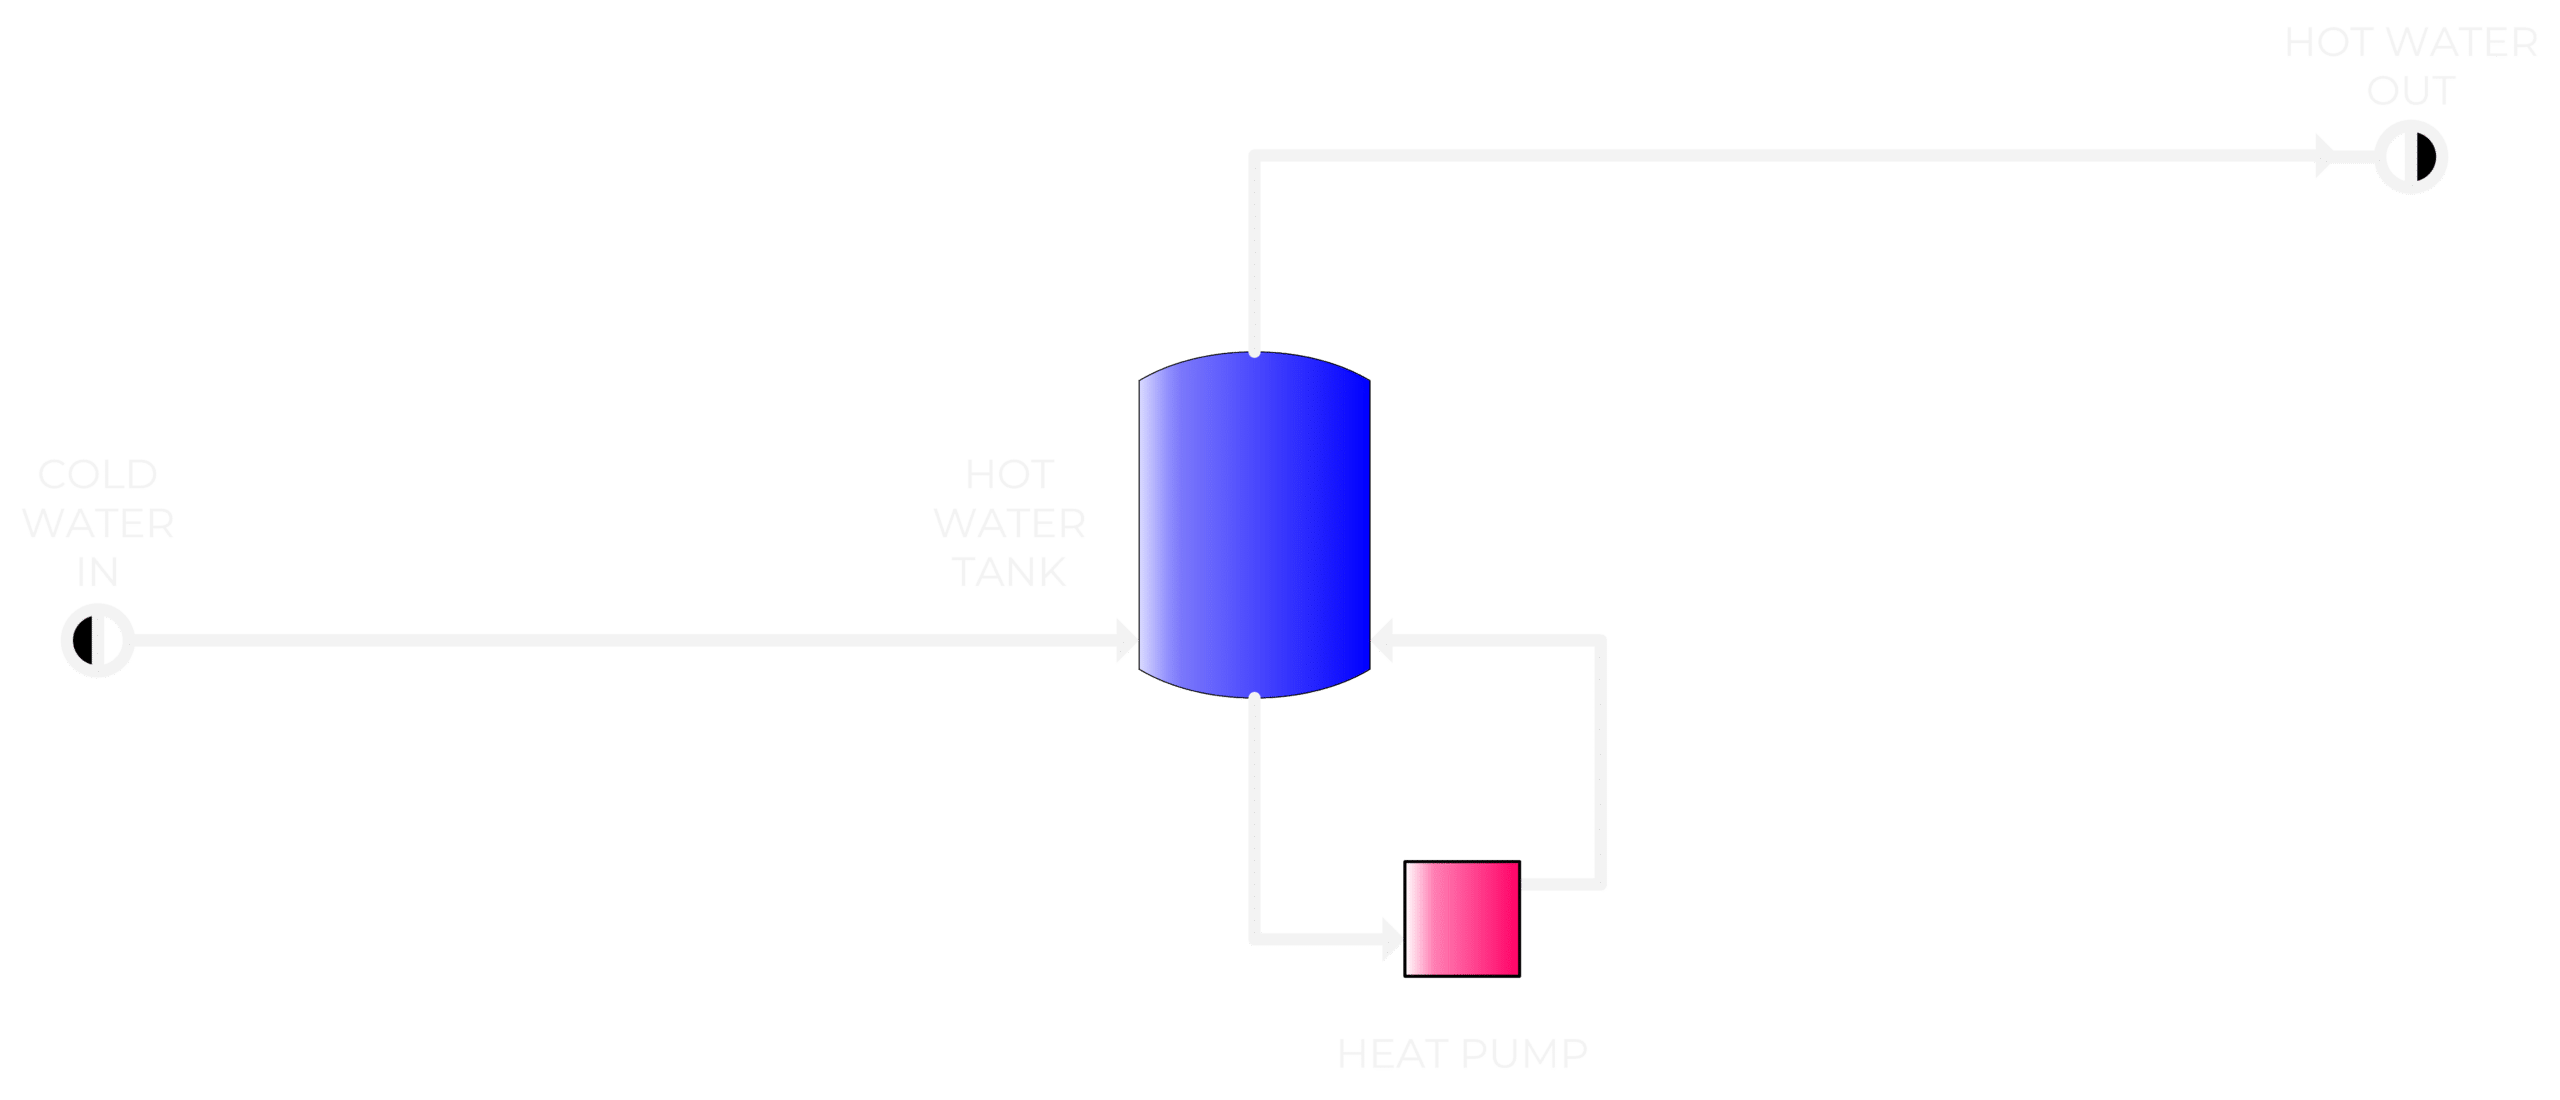 Hot Water Vessels